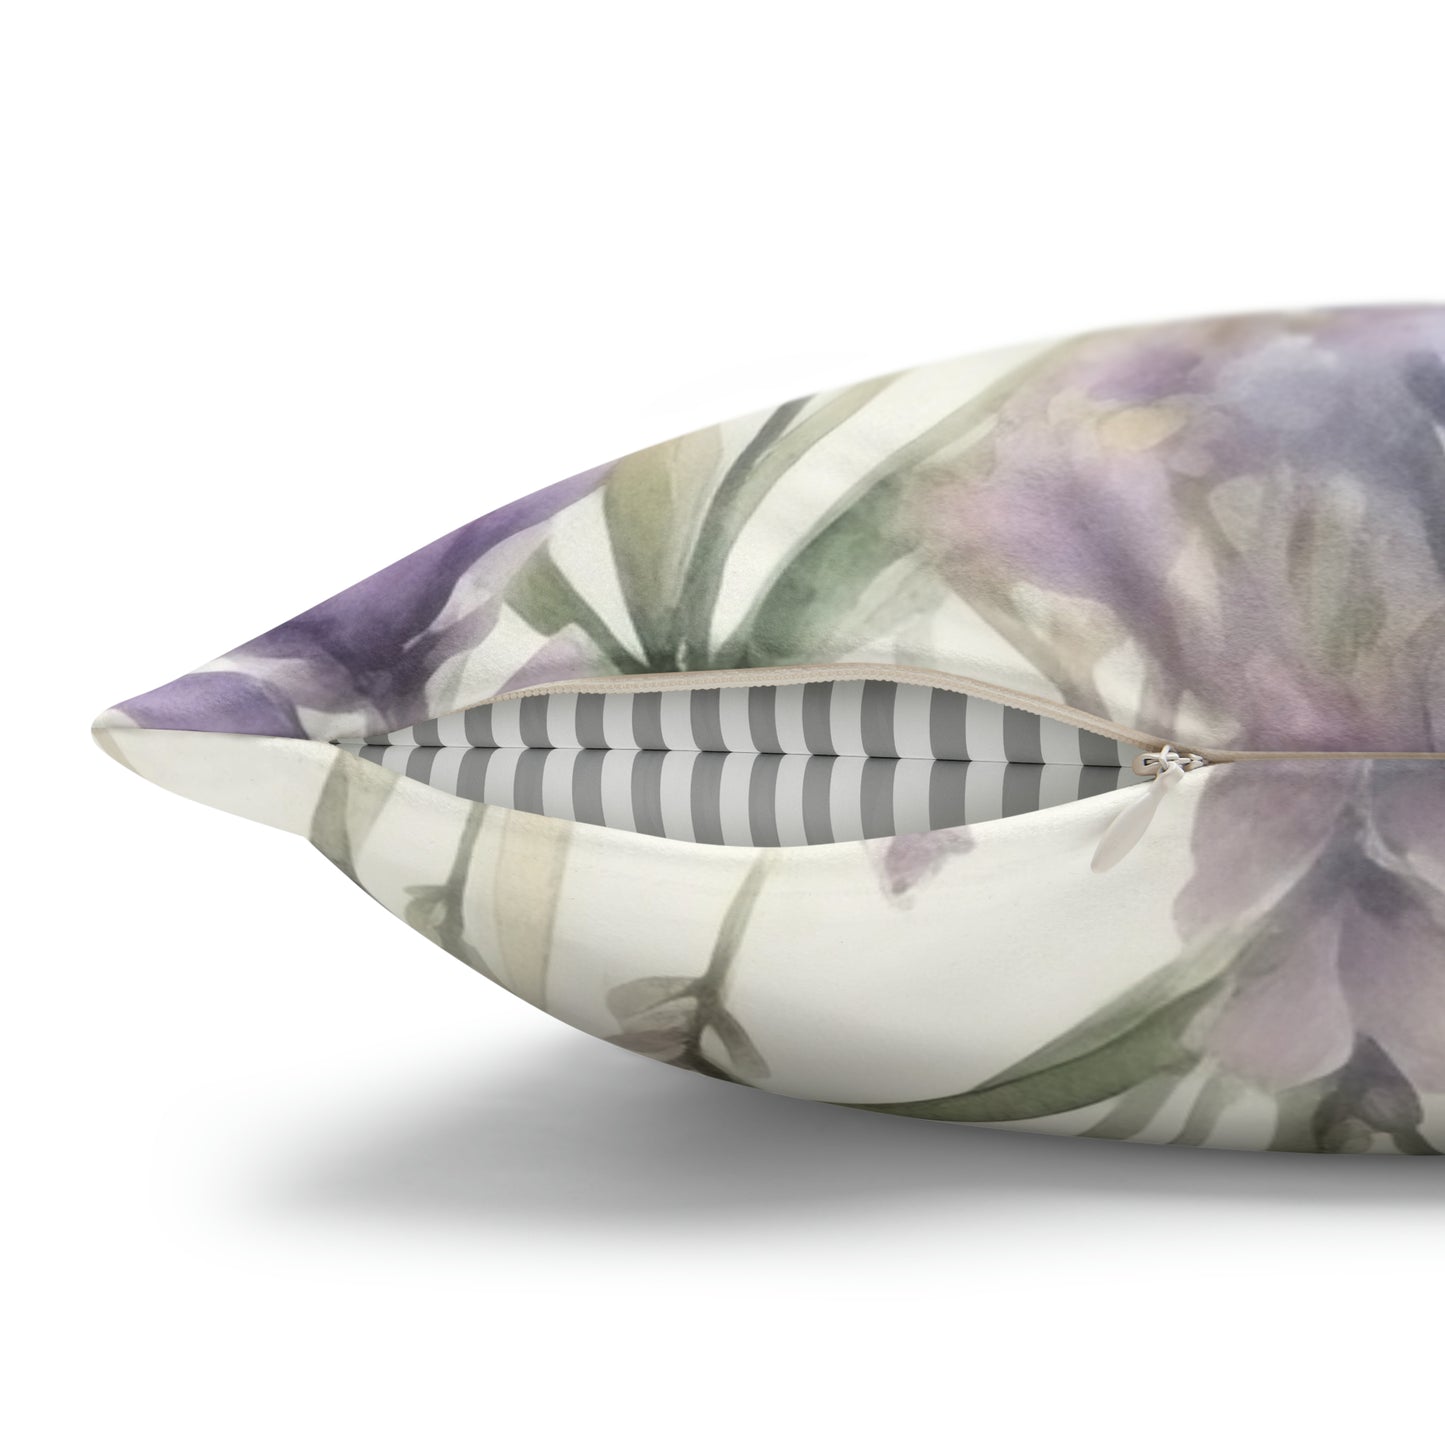 Lavender Watercolor Pillow Case